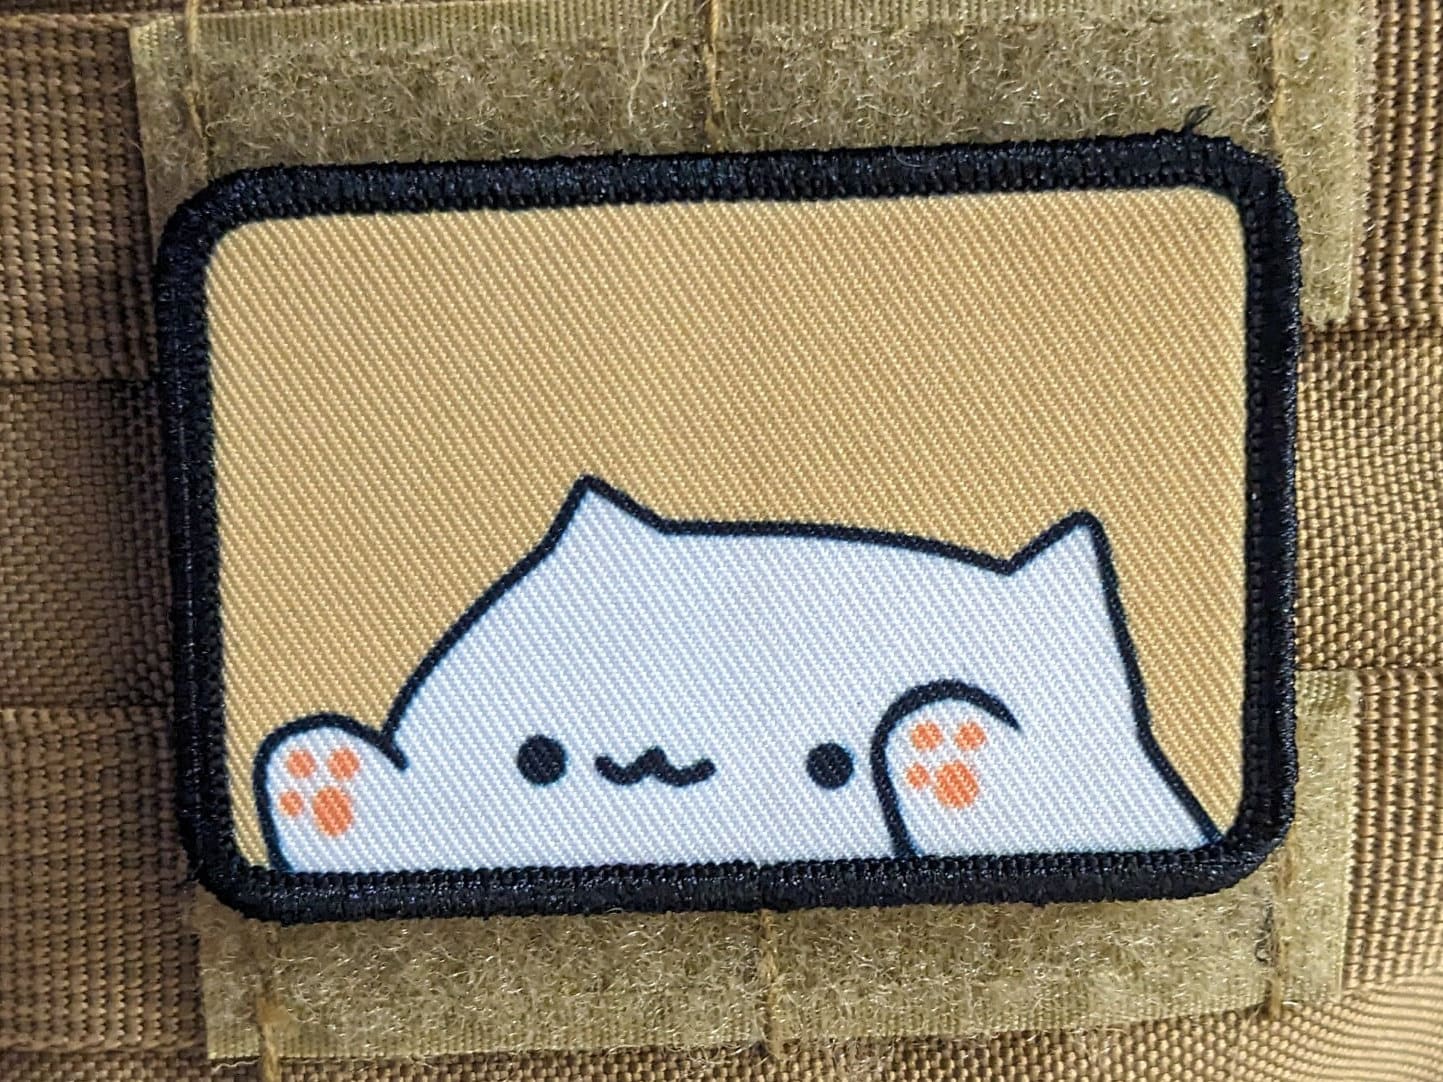 Snarky Meme cat patch – LittleDumplingArts